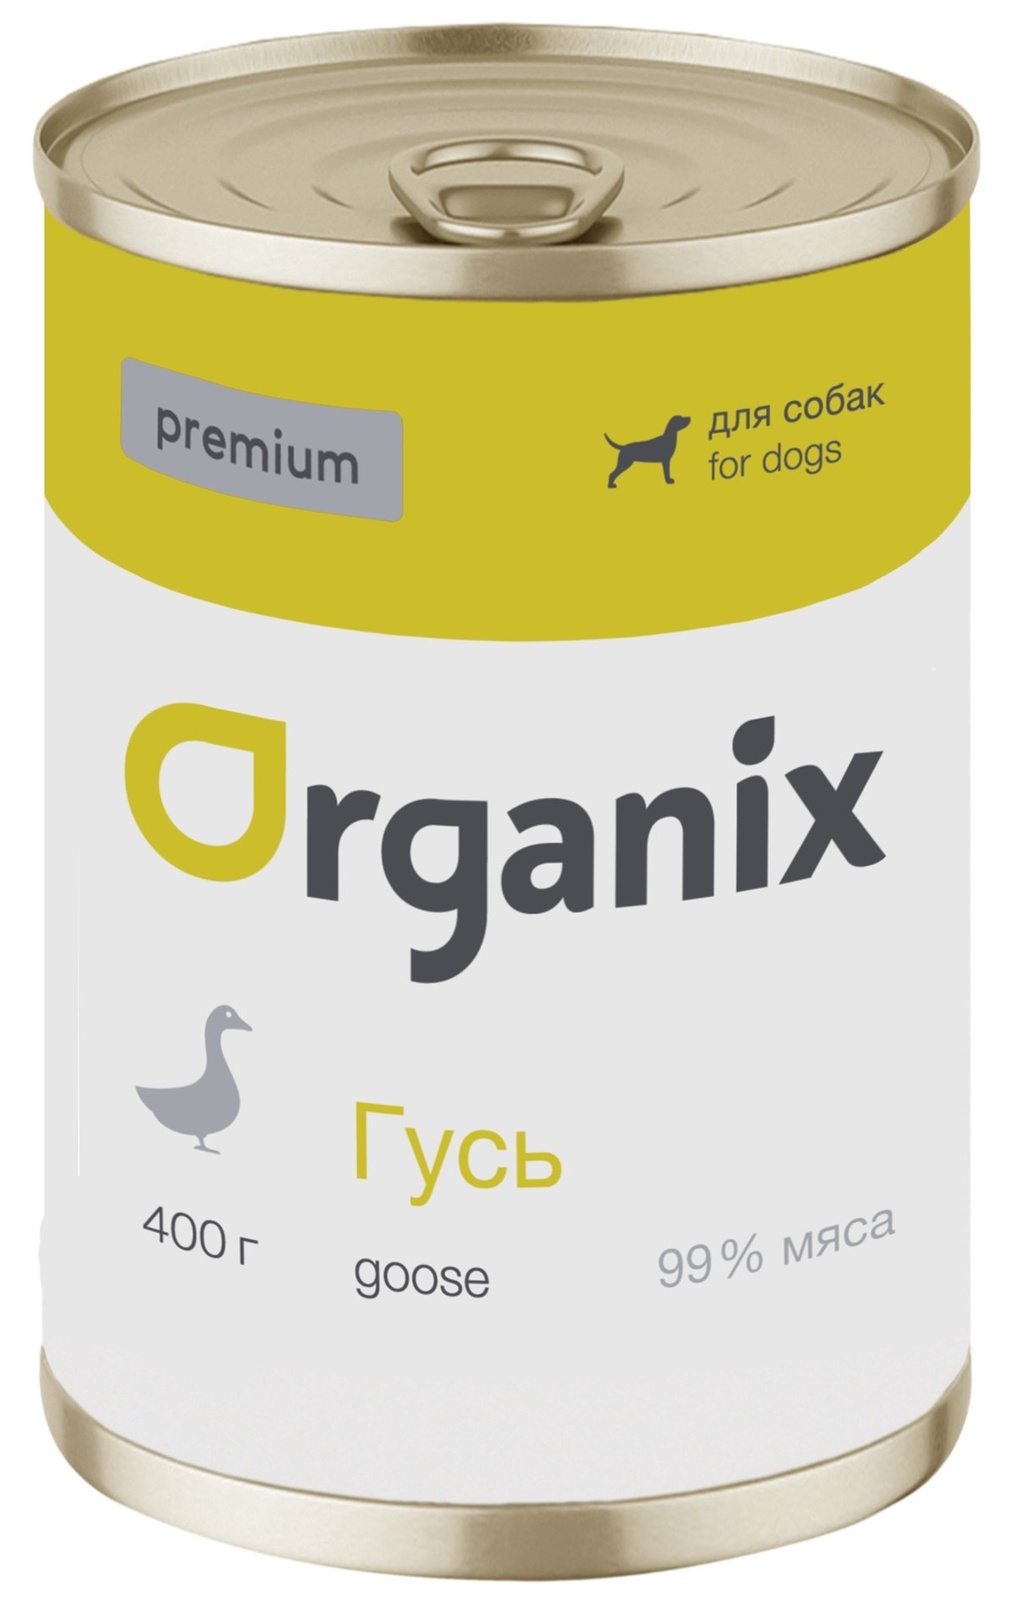 Organix консервы Organix монобелковые премиум консервы для собак, с гусем (100 г) organix консервы organix консервы для собак телятина с зеленой фасолью 100 г